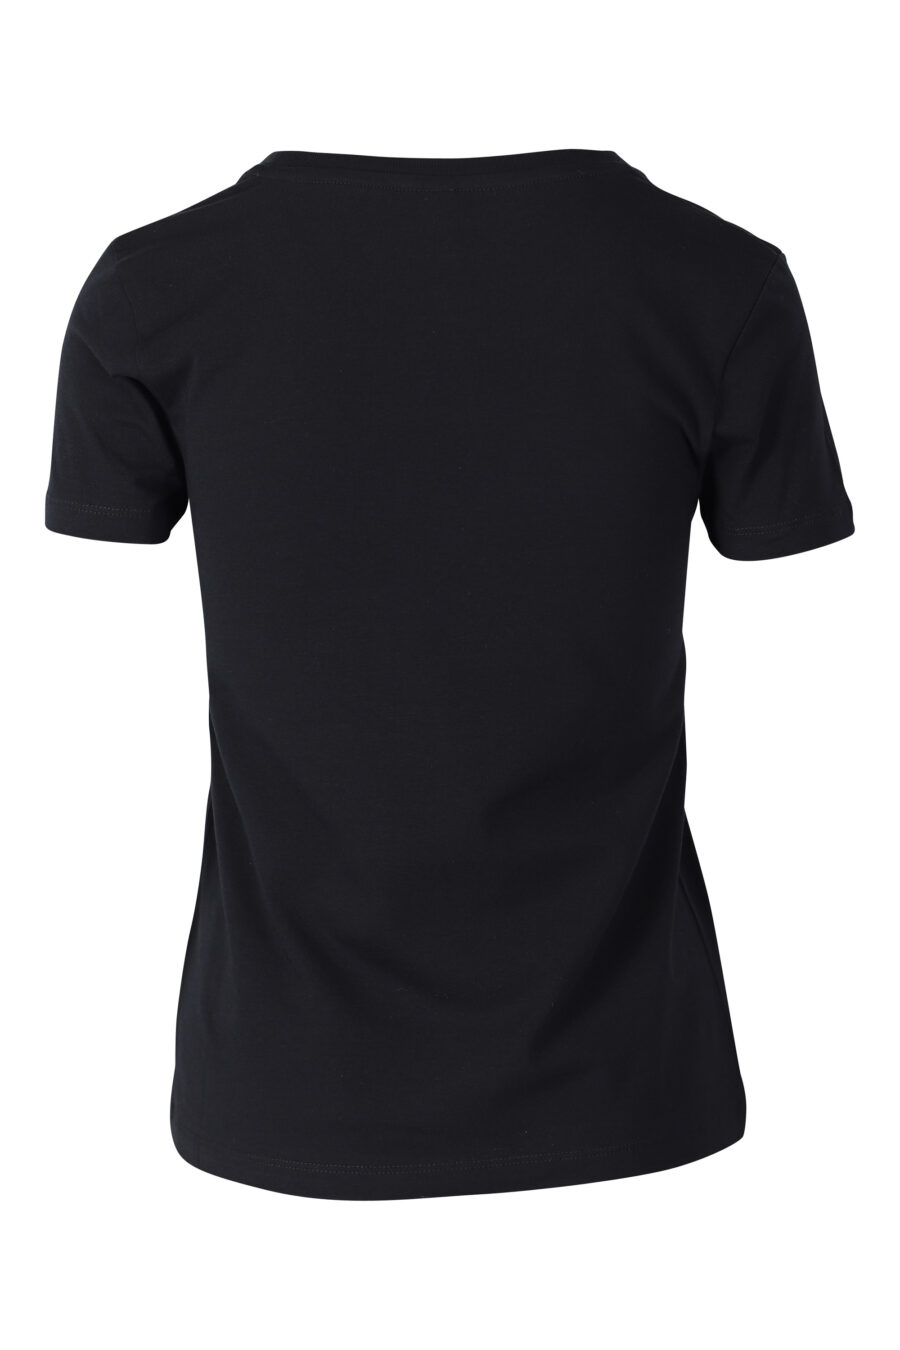 Schwarzes, schmal geschnittenes T-Shirt mit Bärenlogo auf dem Unterarm - IMG 2367